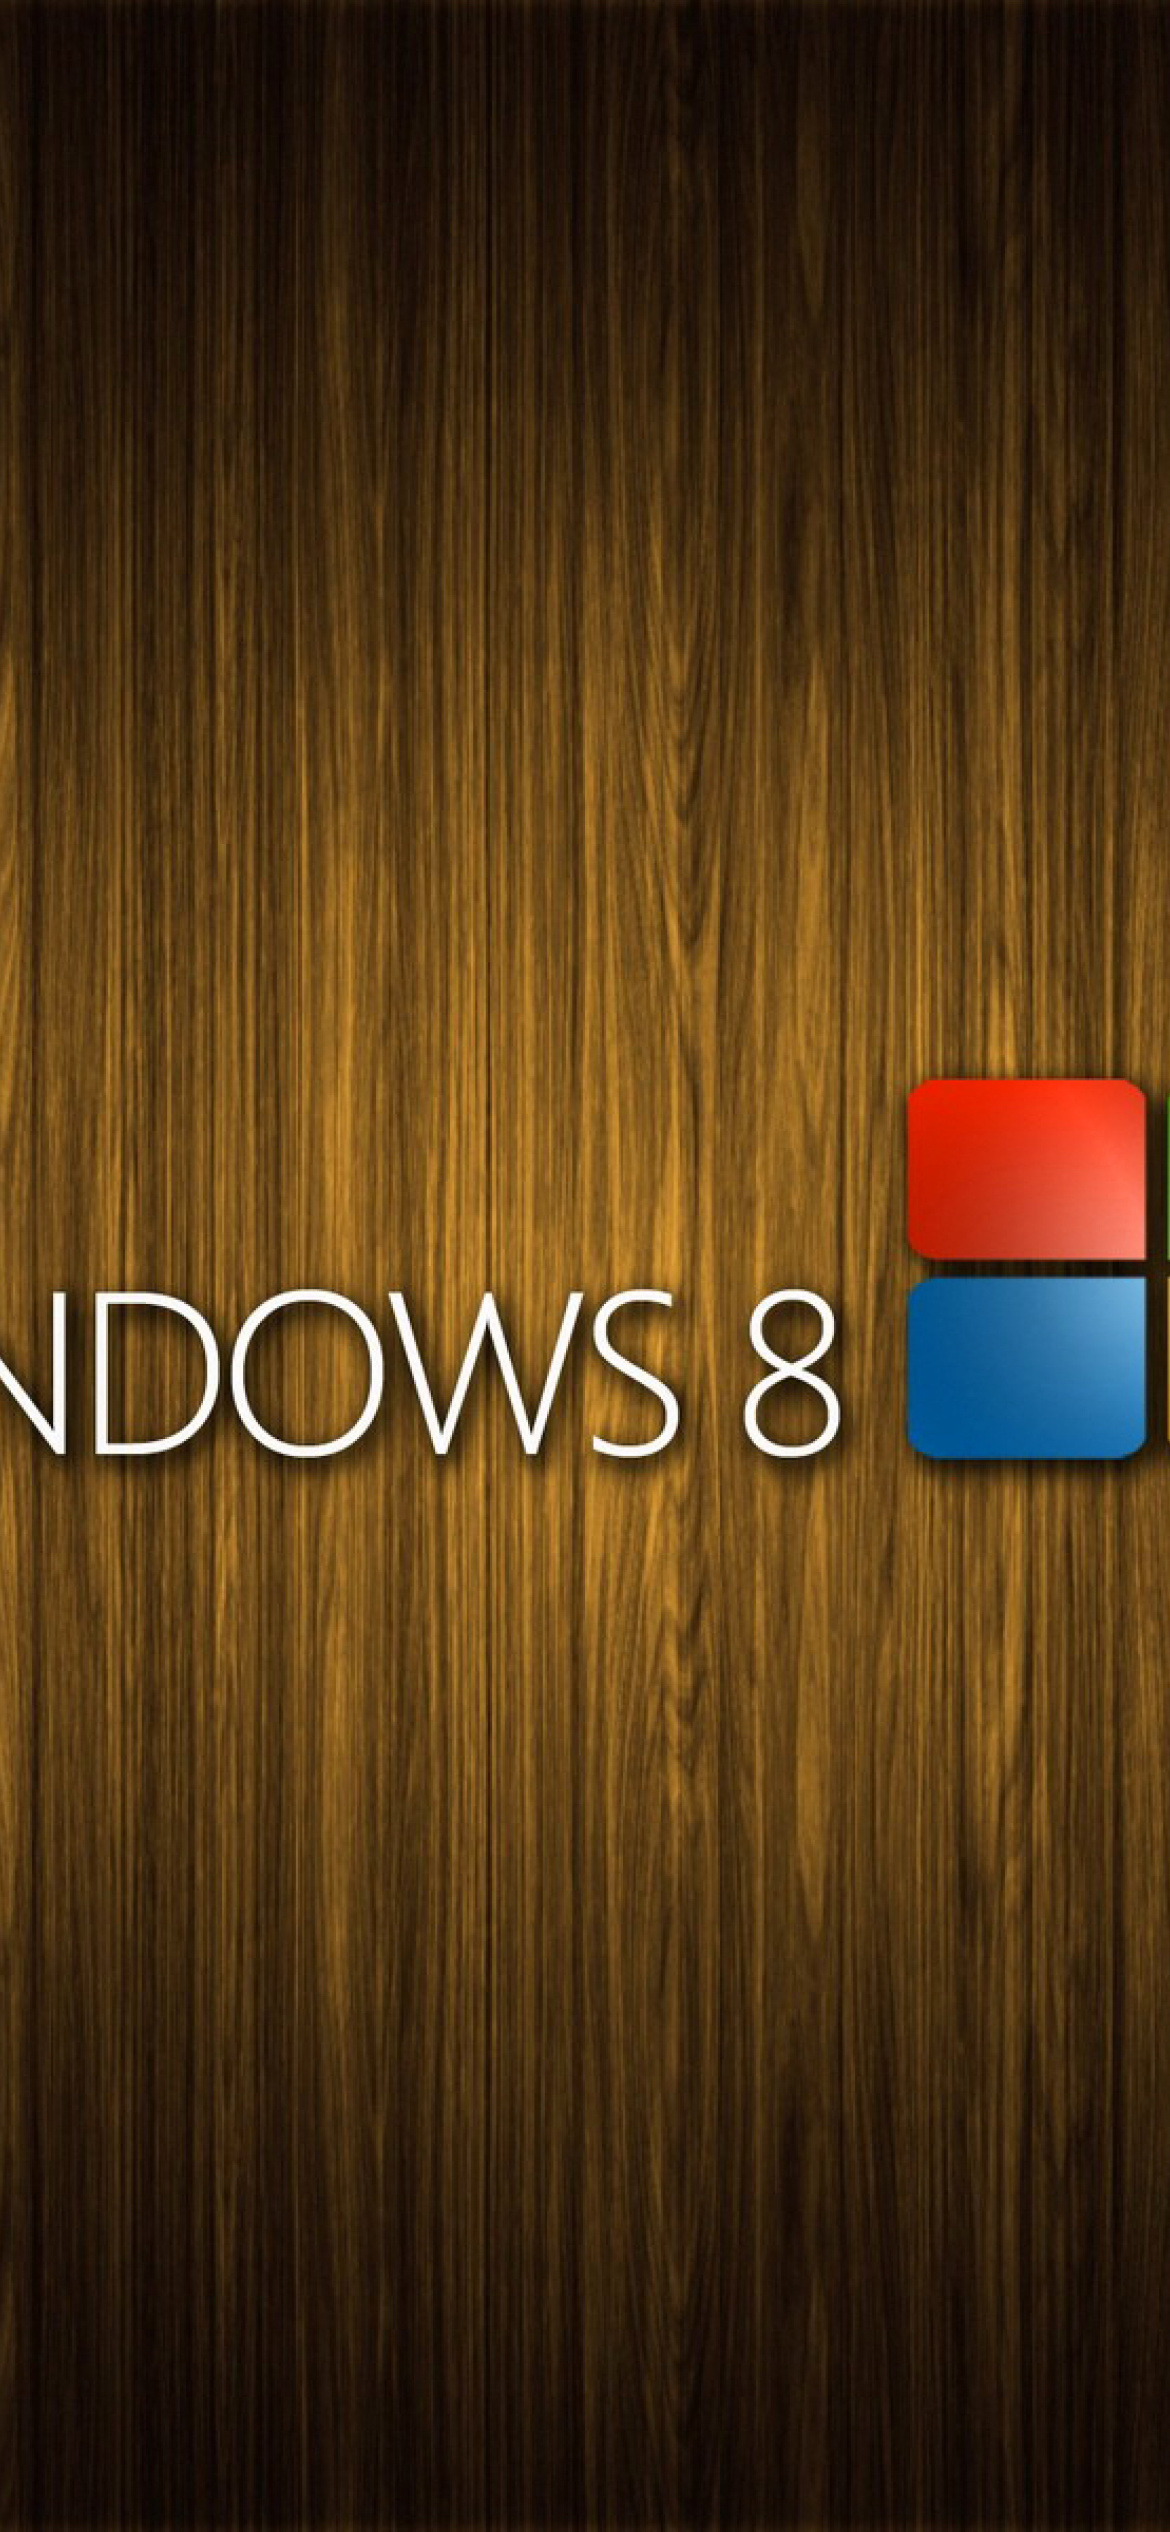 Windows 8 Wooden Emblem screenshot #1 1170x2532